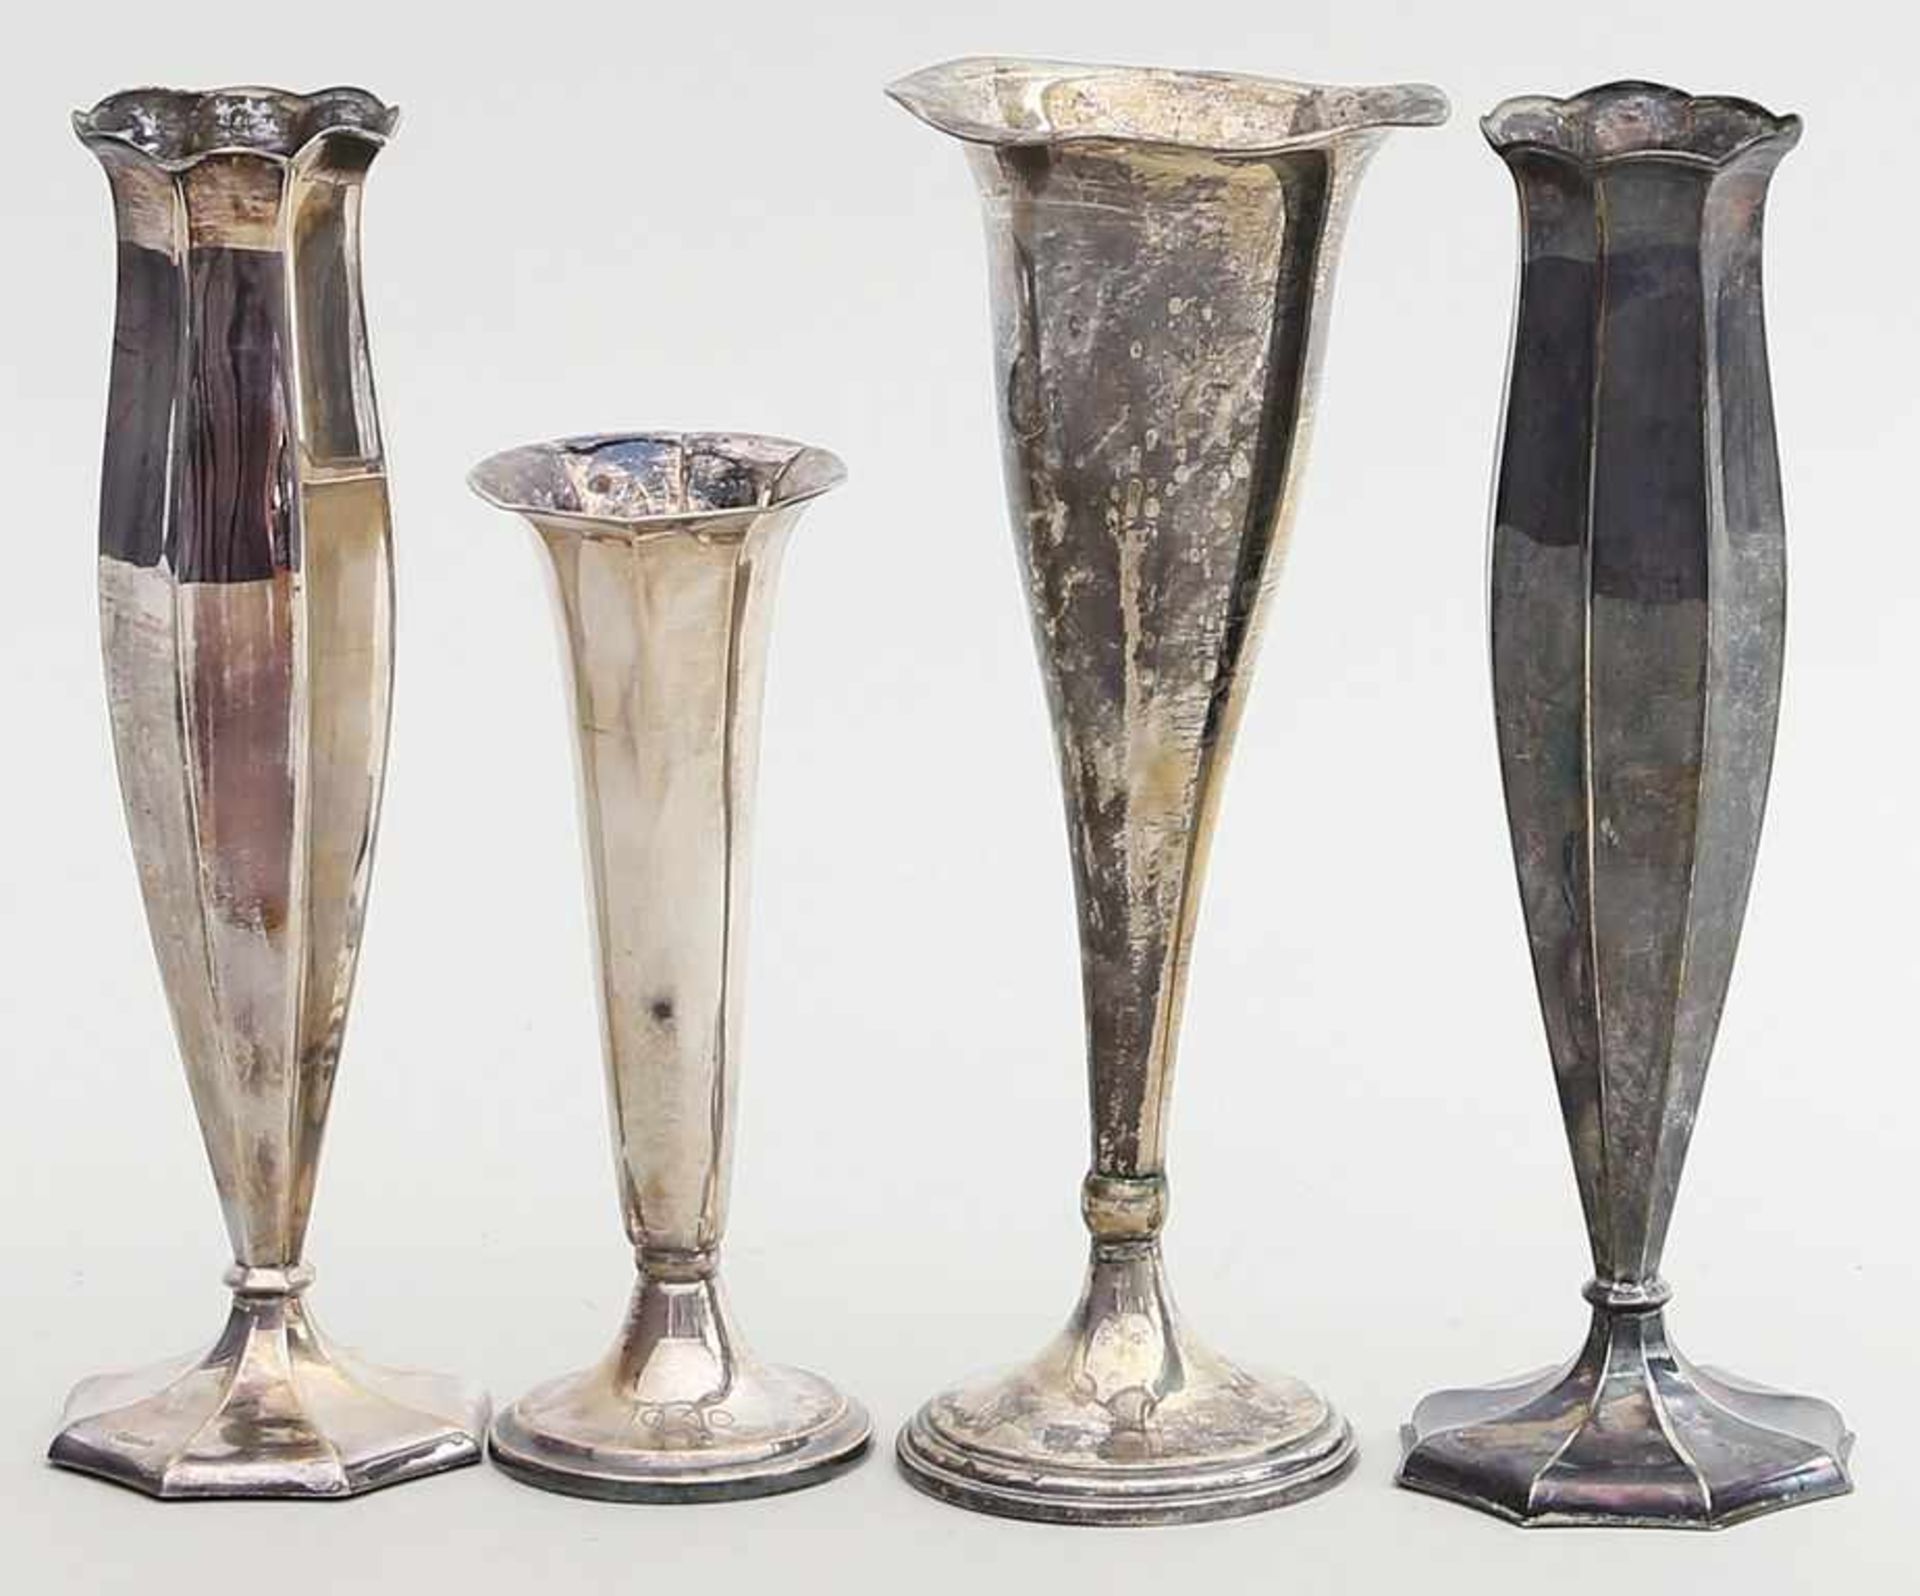 4 Vasen, einmal als Paar.800/000 bzw. 835/000 Silber, brutto 252 g (da 3x gefüllt). Trompetenförmige